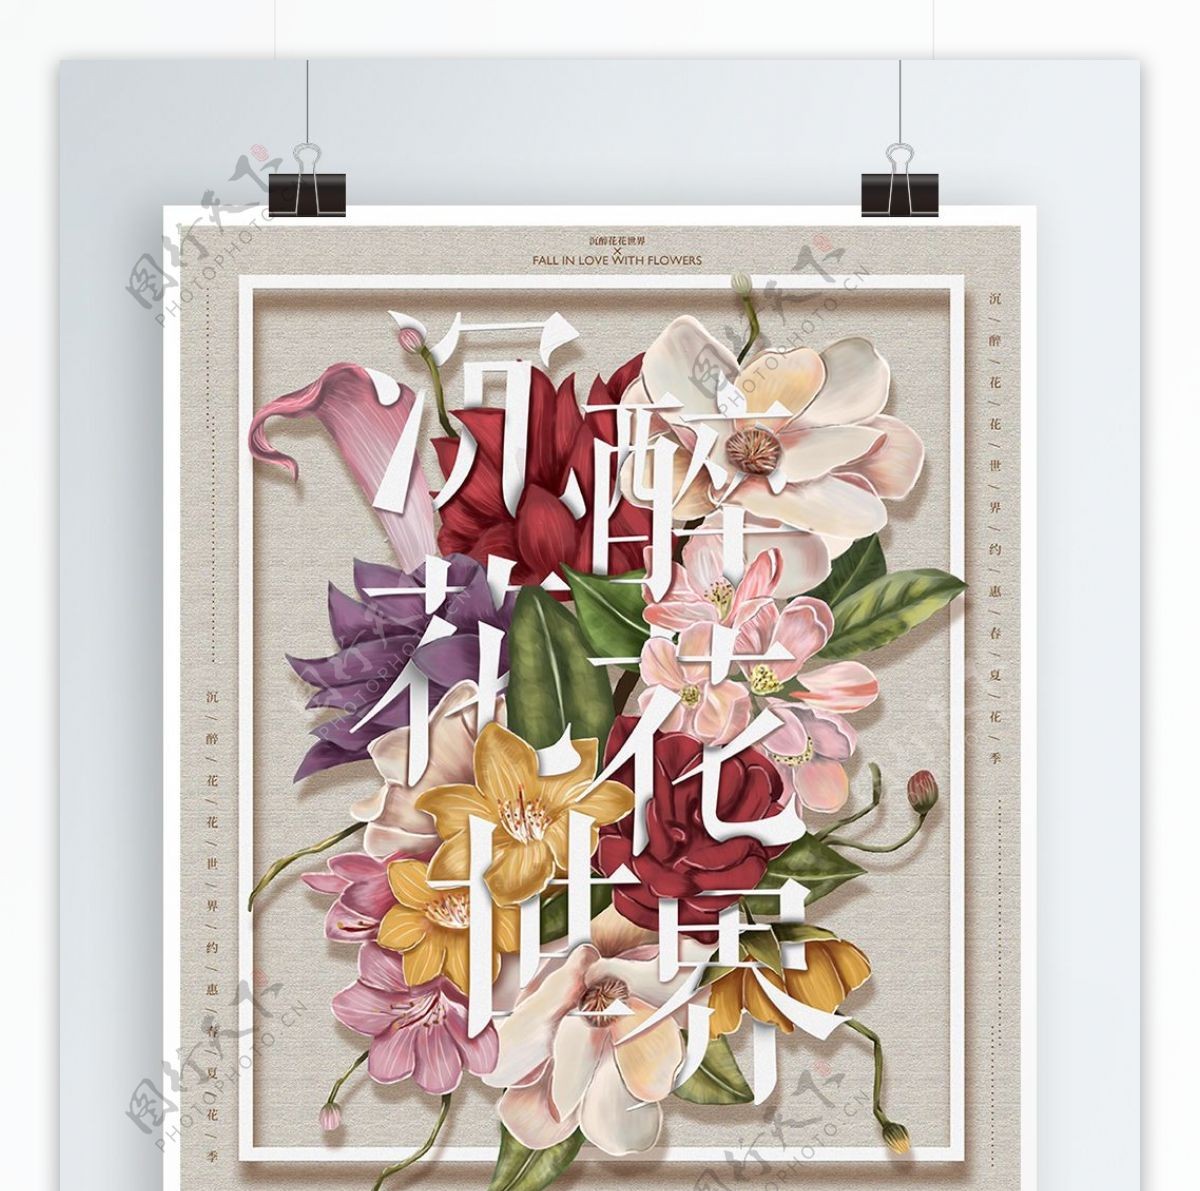 原创手绘花朵与字母插画促销海报